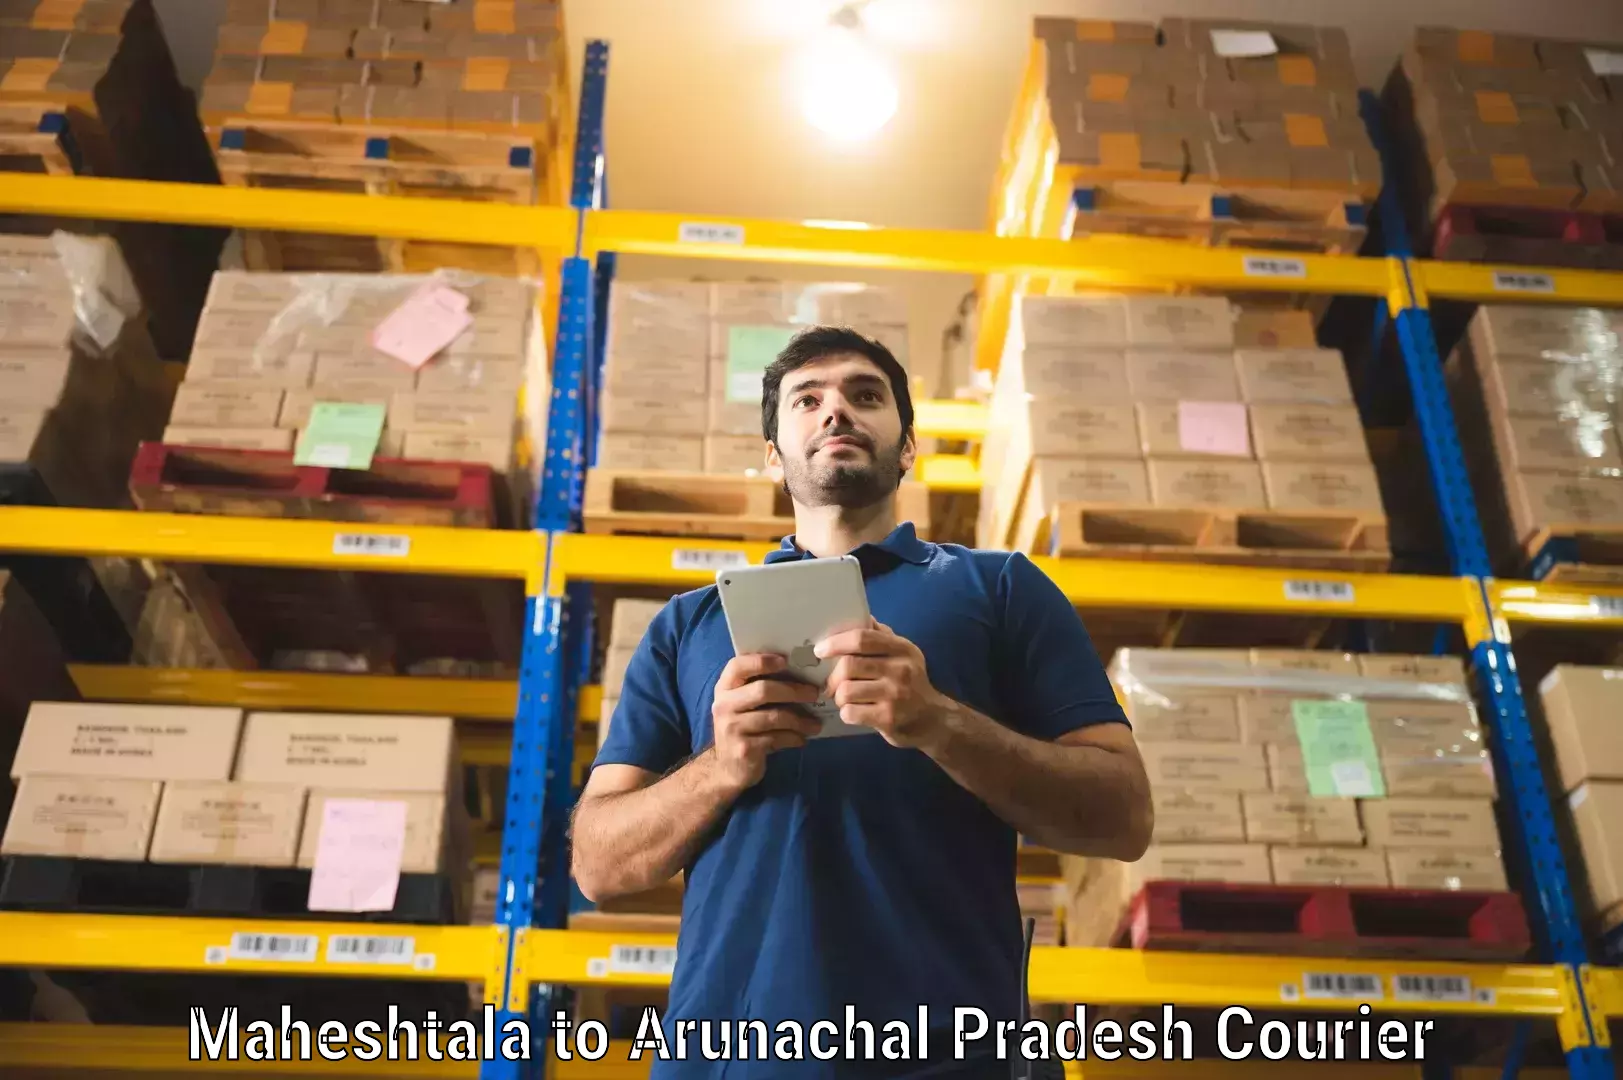 Regular parcel service Maheshtala to Lohit